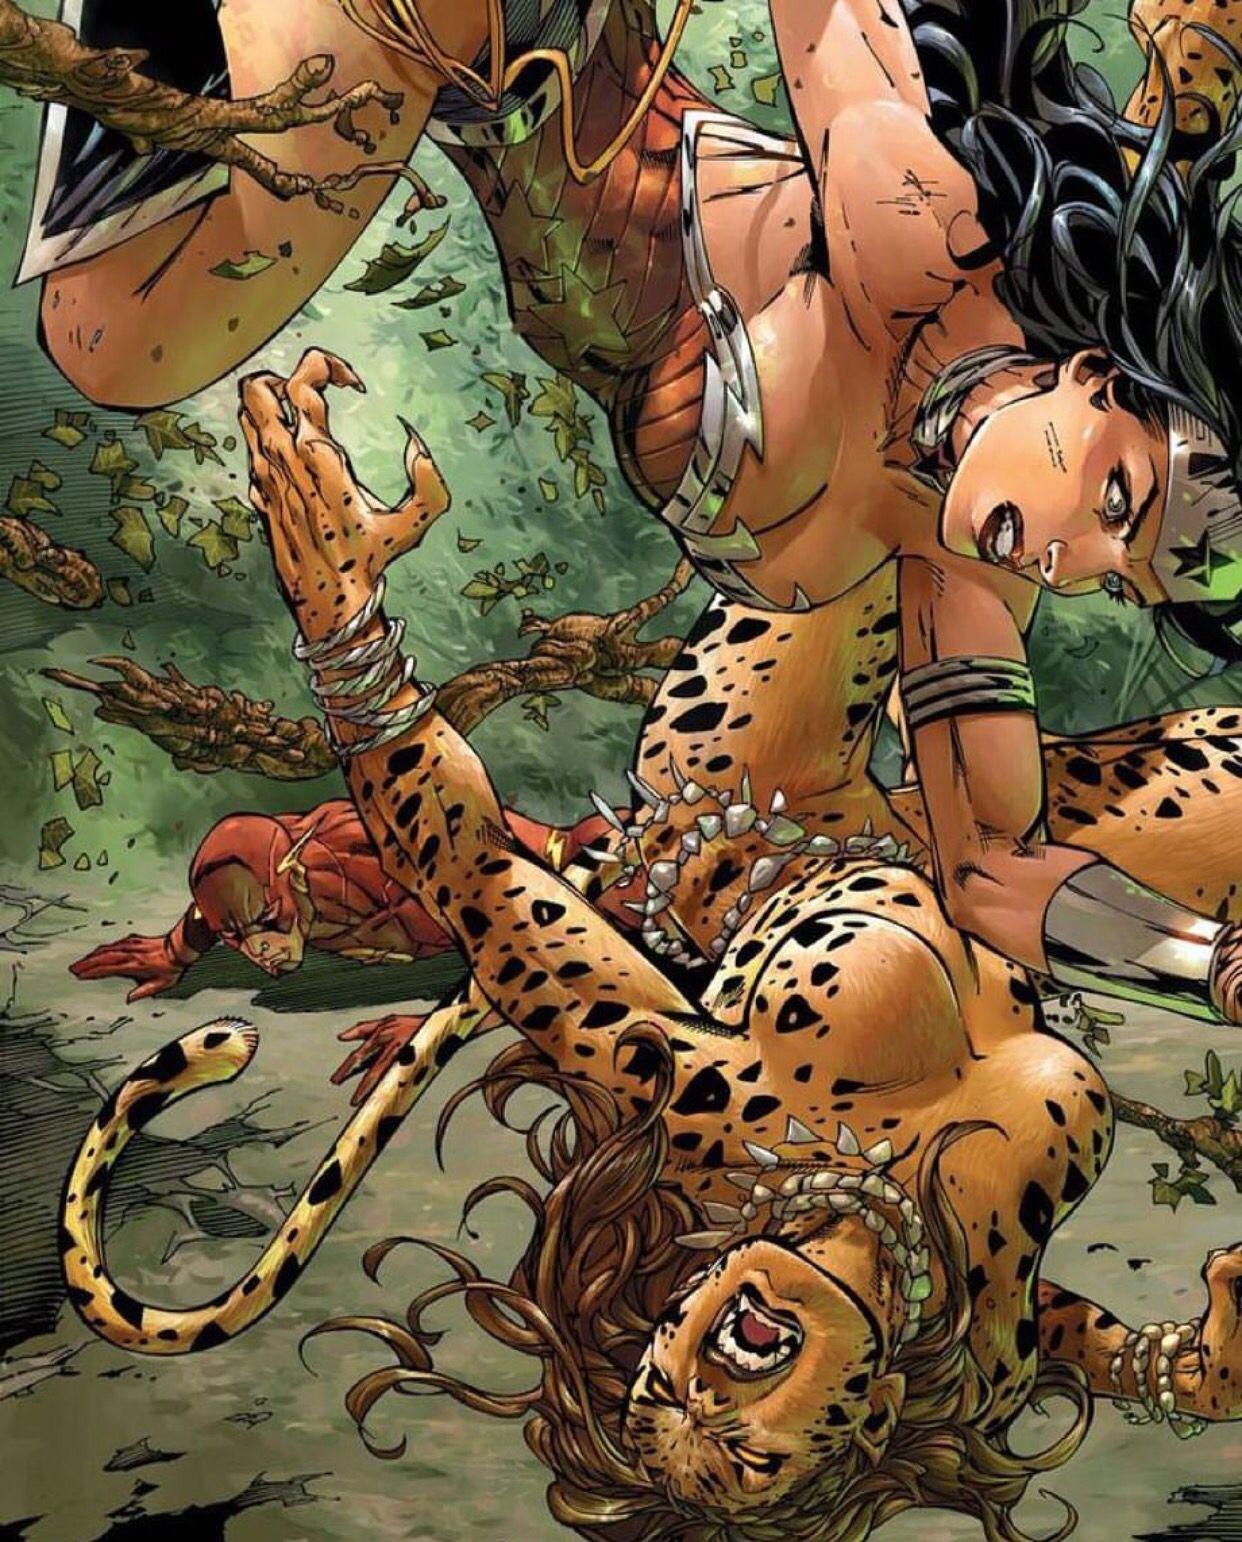 Wonder Woman Vs Cheetah. Wonder woman vs cheetah, Wonder